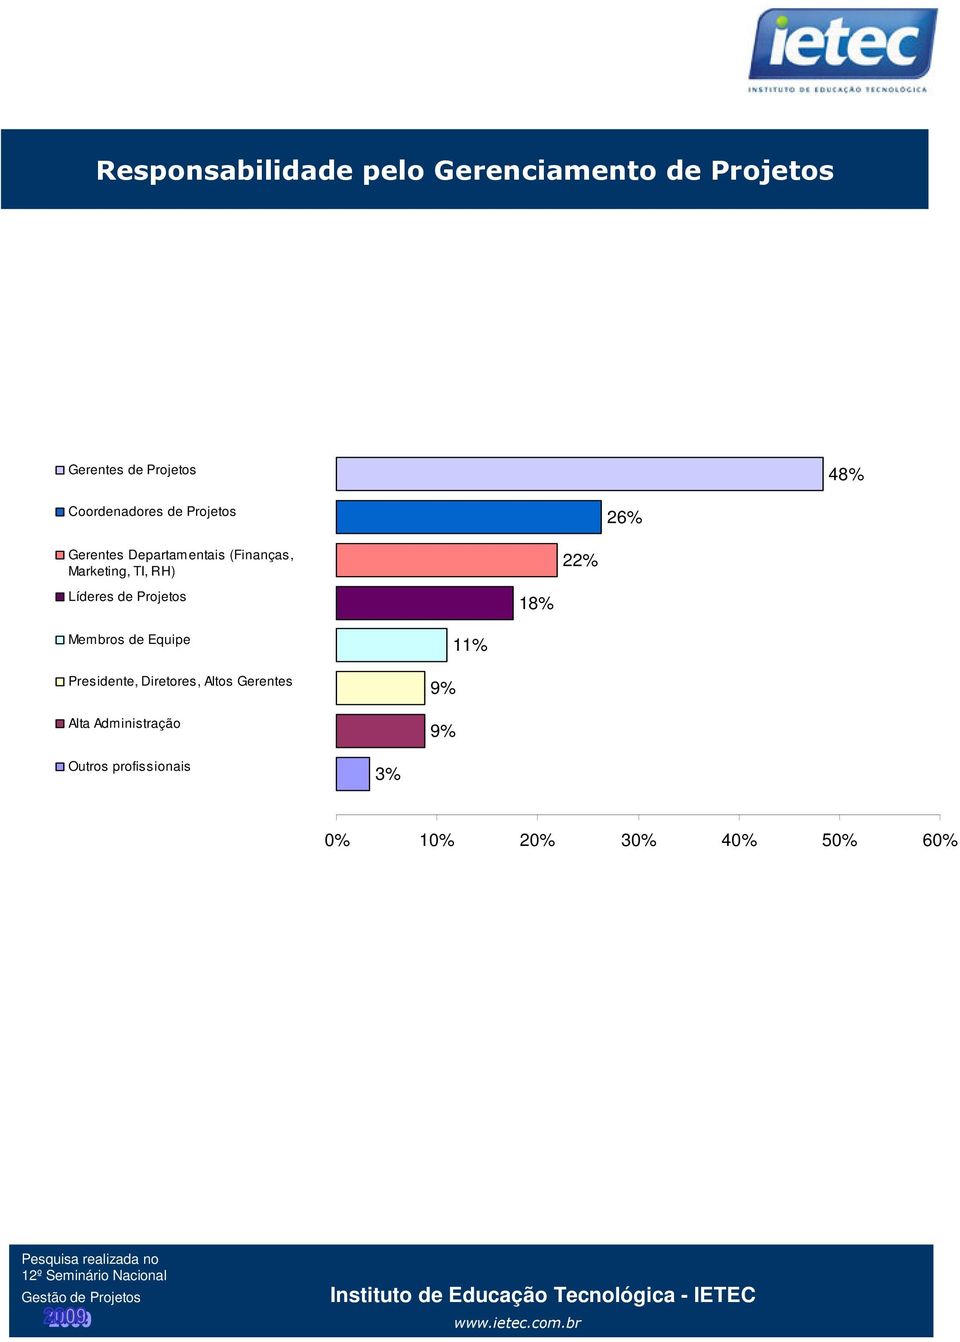 RH) 22% Líderes de Projetos 18% Membros de Equipe Presidente, Diretores, Altos